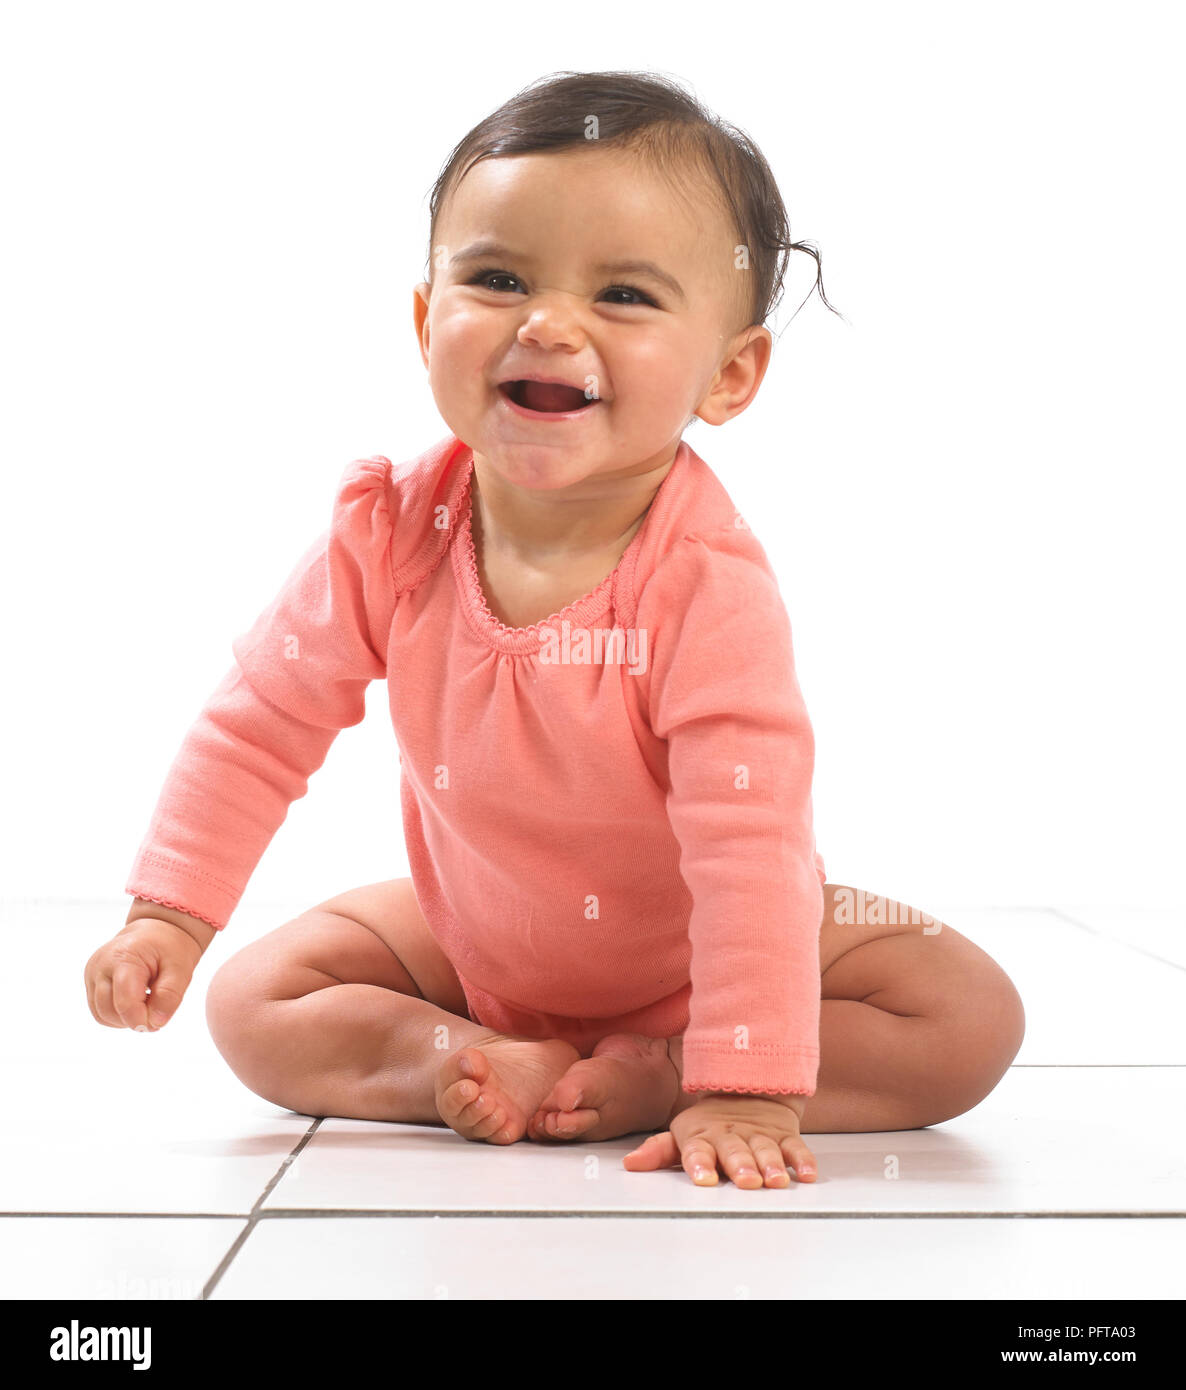 7 mesi bambino immagini e fotografie stock ad alta risoluzione - Alamy